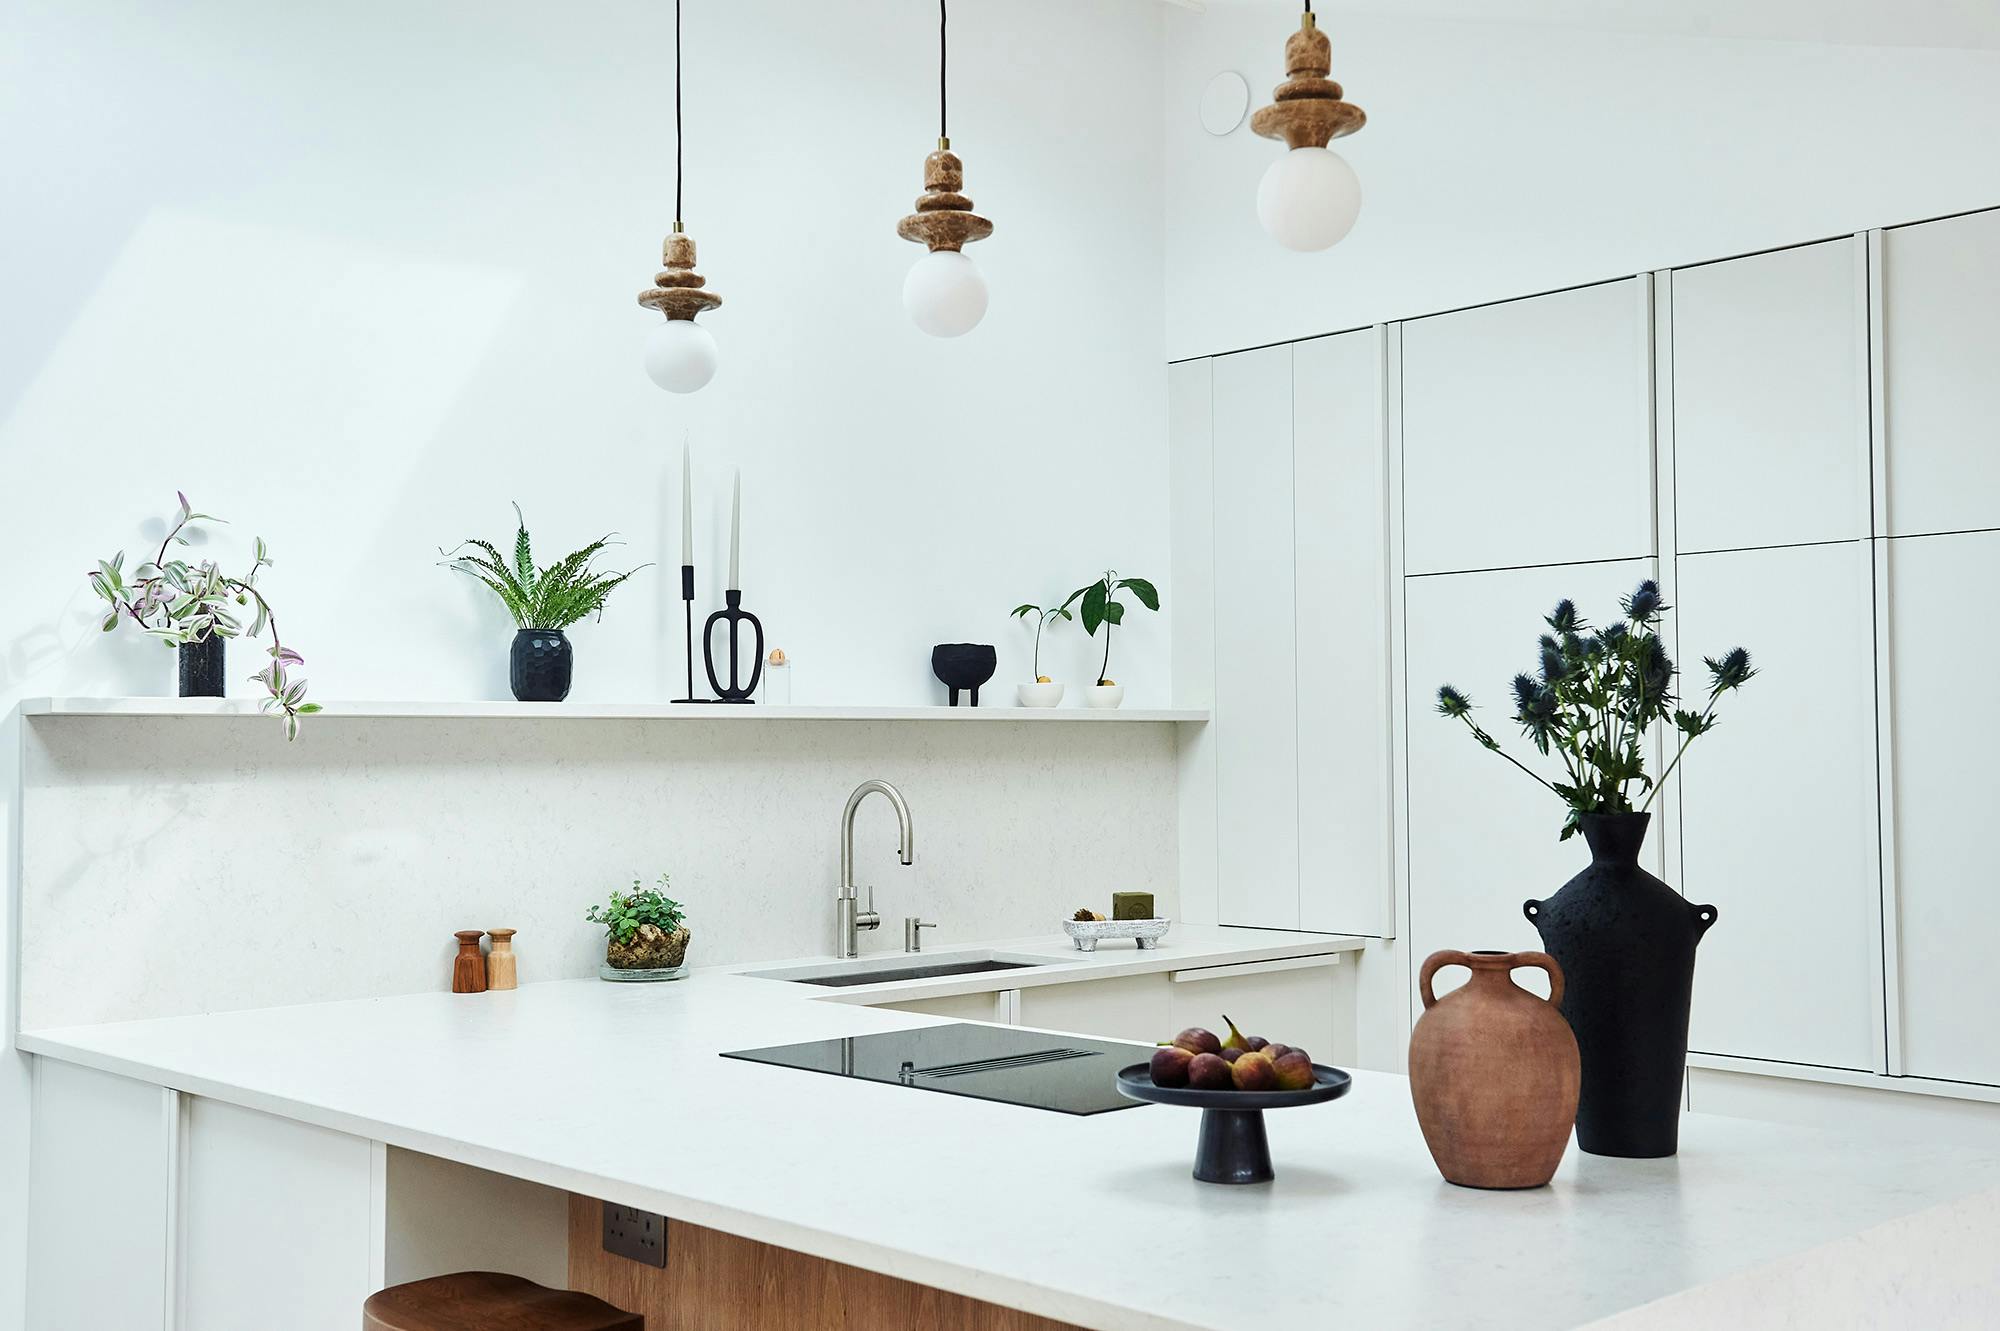 Imagen número 82 de Una casa estilo scandifornian con una cocina luminosa y elegante